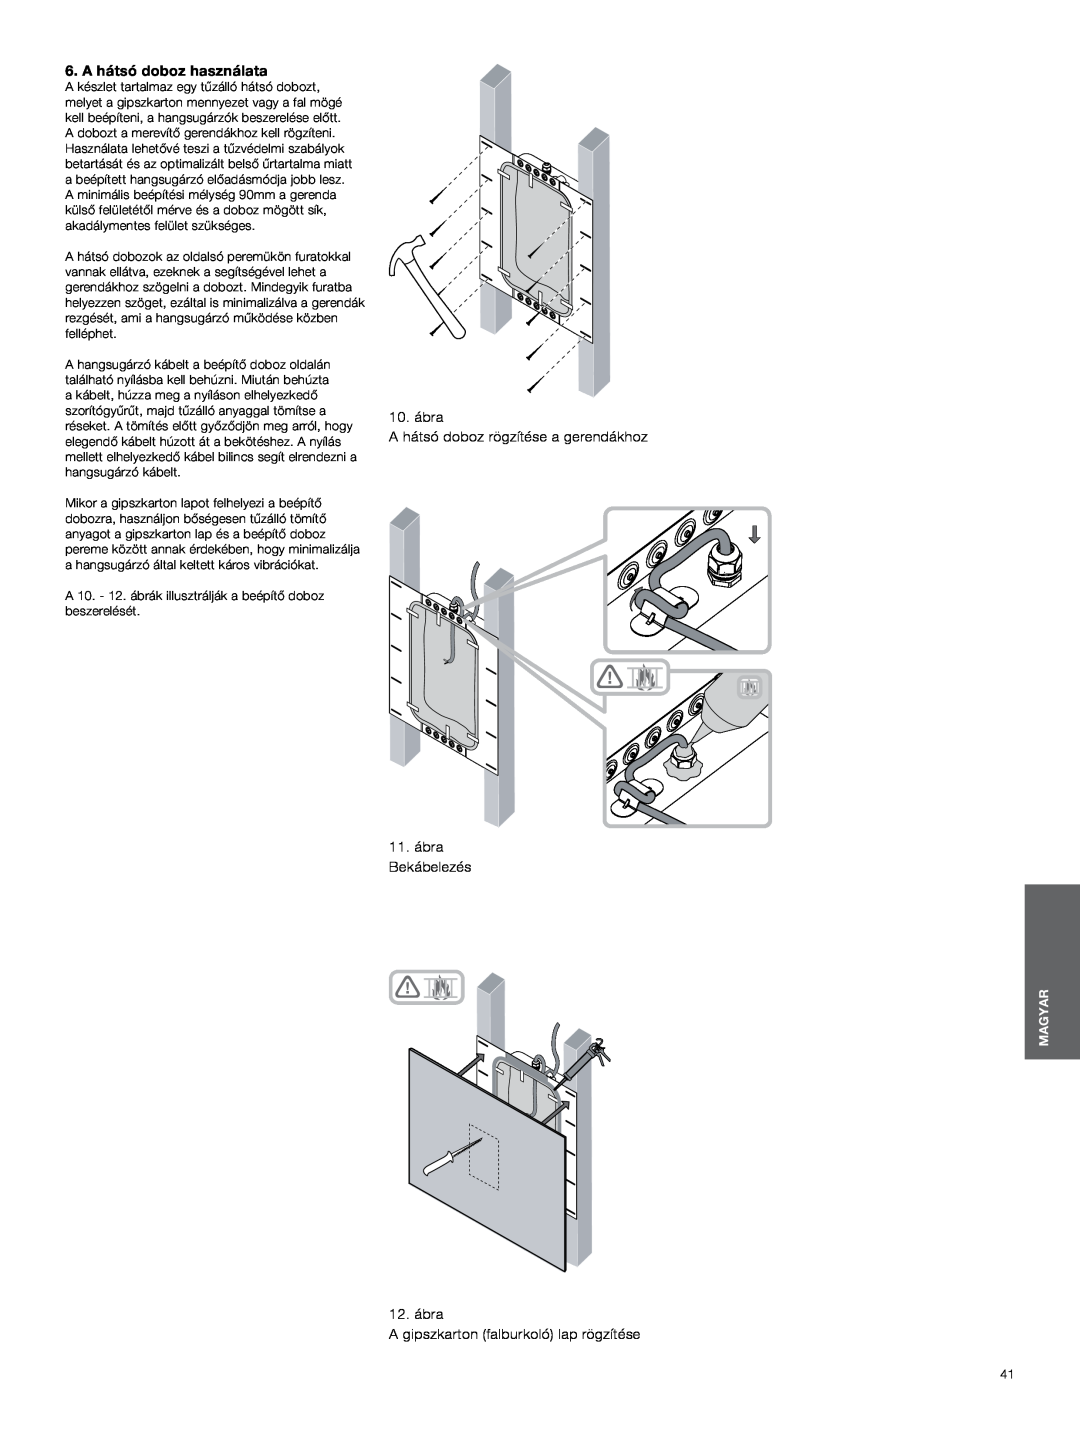 Bowers & Wilkins CWM3 manual A hátsó doboz használata, 10. ábra A hátsó doboz rögzítése a gerendákhoz, 11.ábra Bekábelezés 